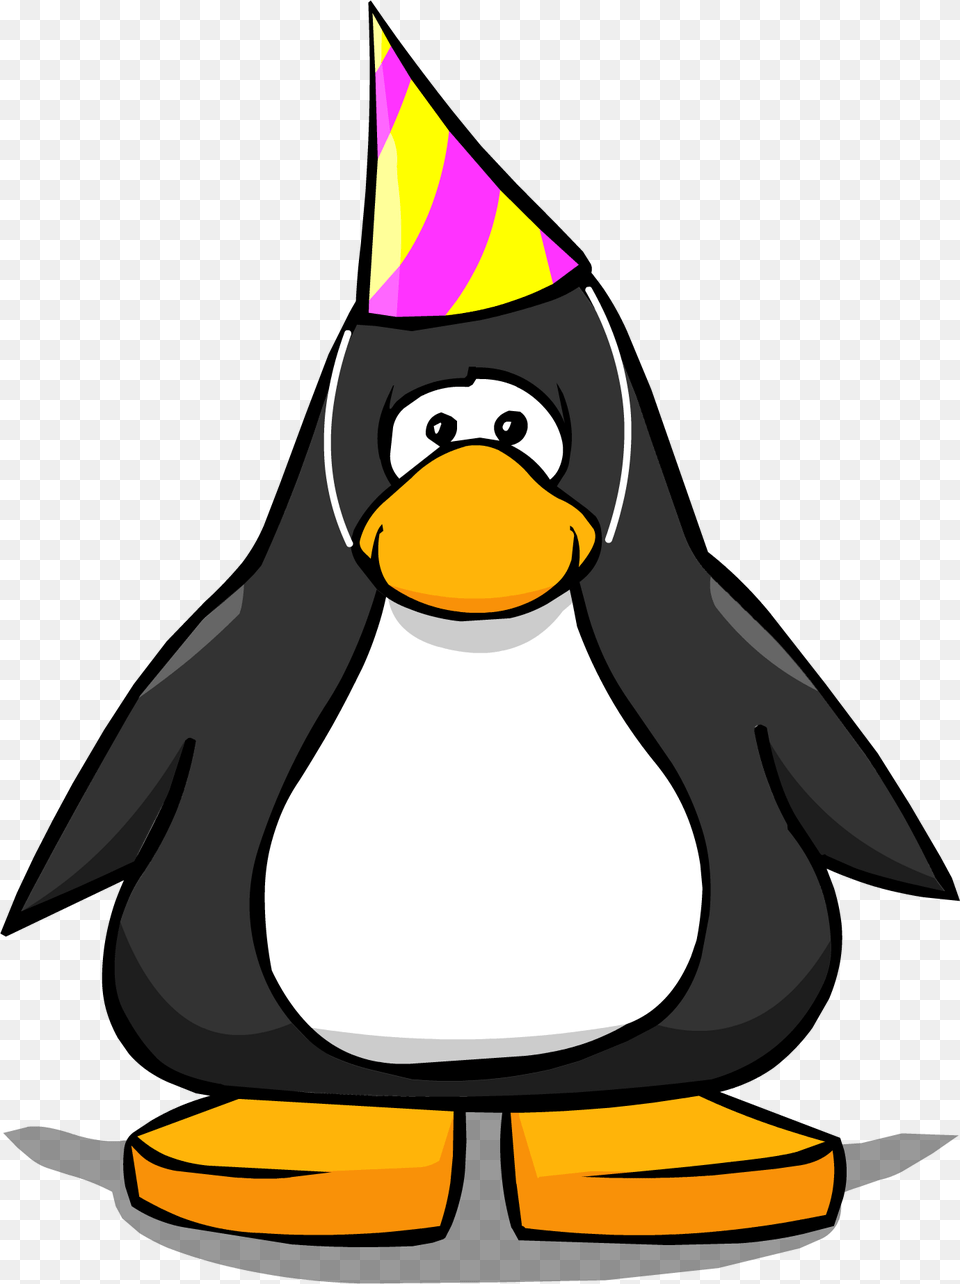 Club Penguin Wiki, Clothing, Hat, Animal, Bird Free Png Download